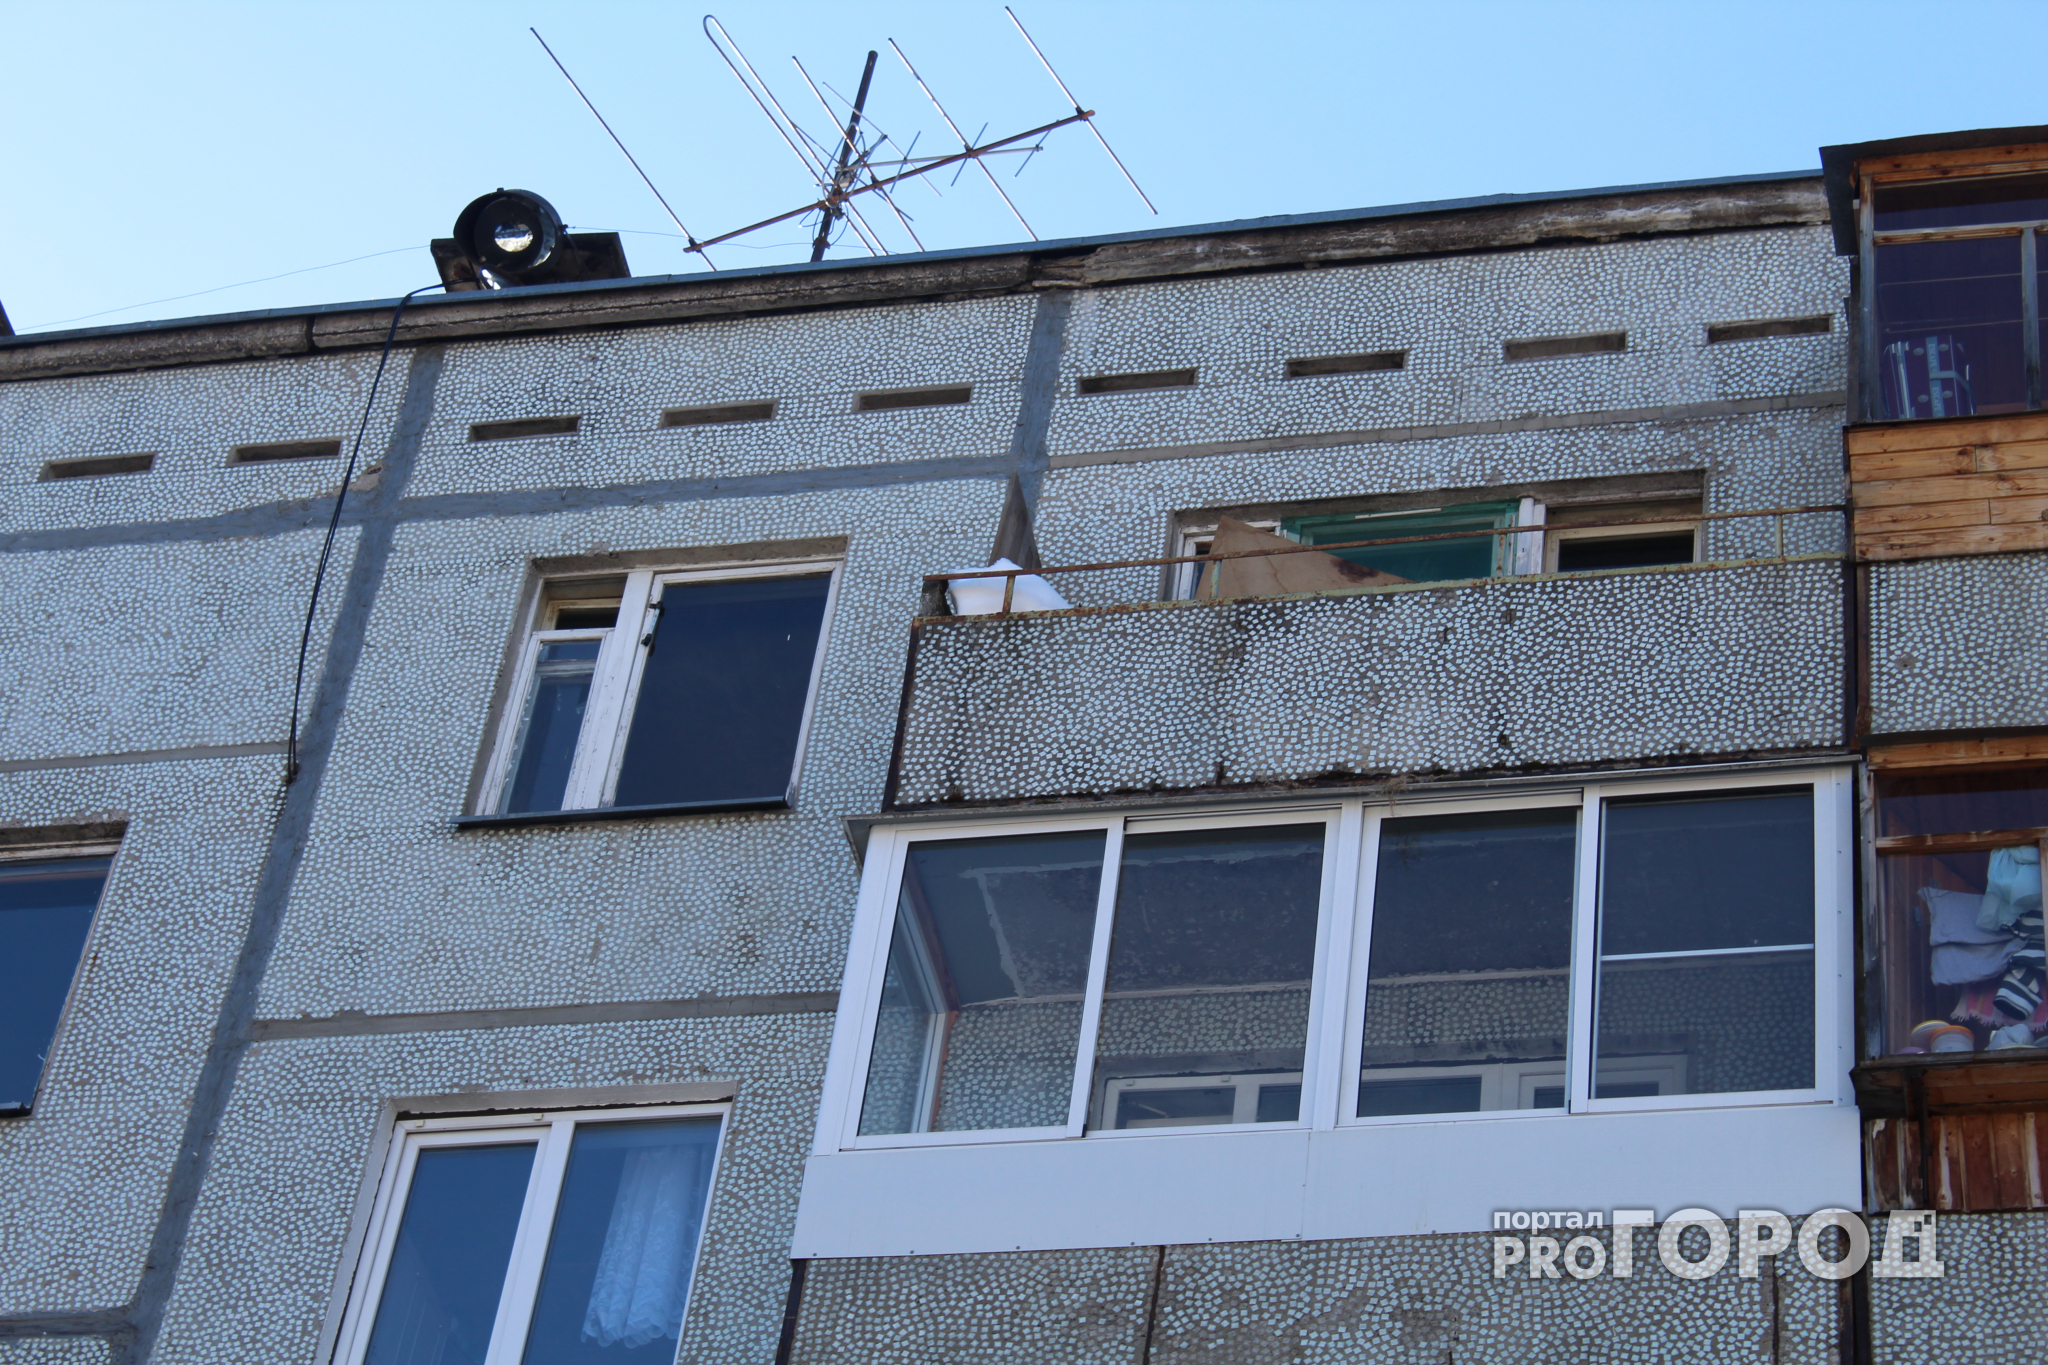 Появились фото квартиры, в которой четыре месяца прятали труп пропавшего сыктывкарца